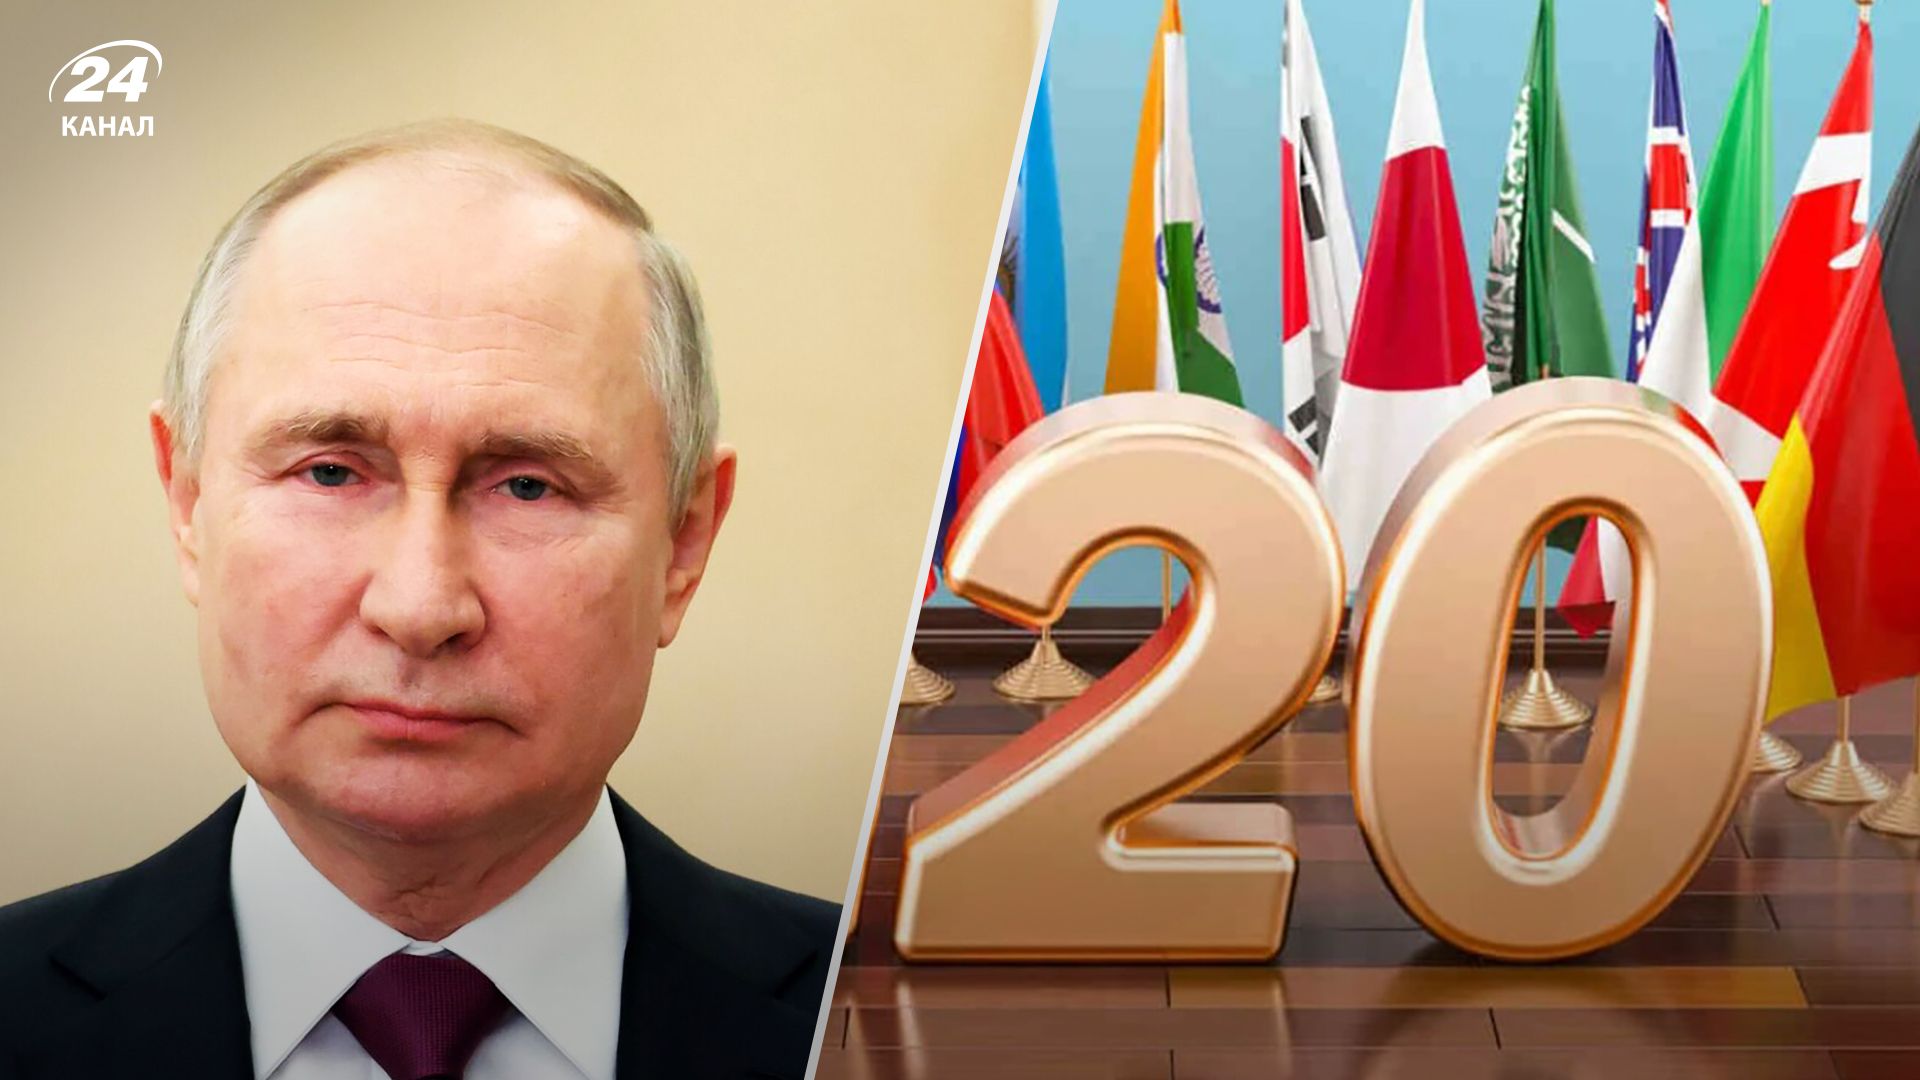 Володимира Путіна помітили у списку учасників саміту G20 - деталі